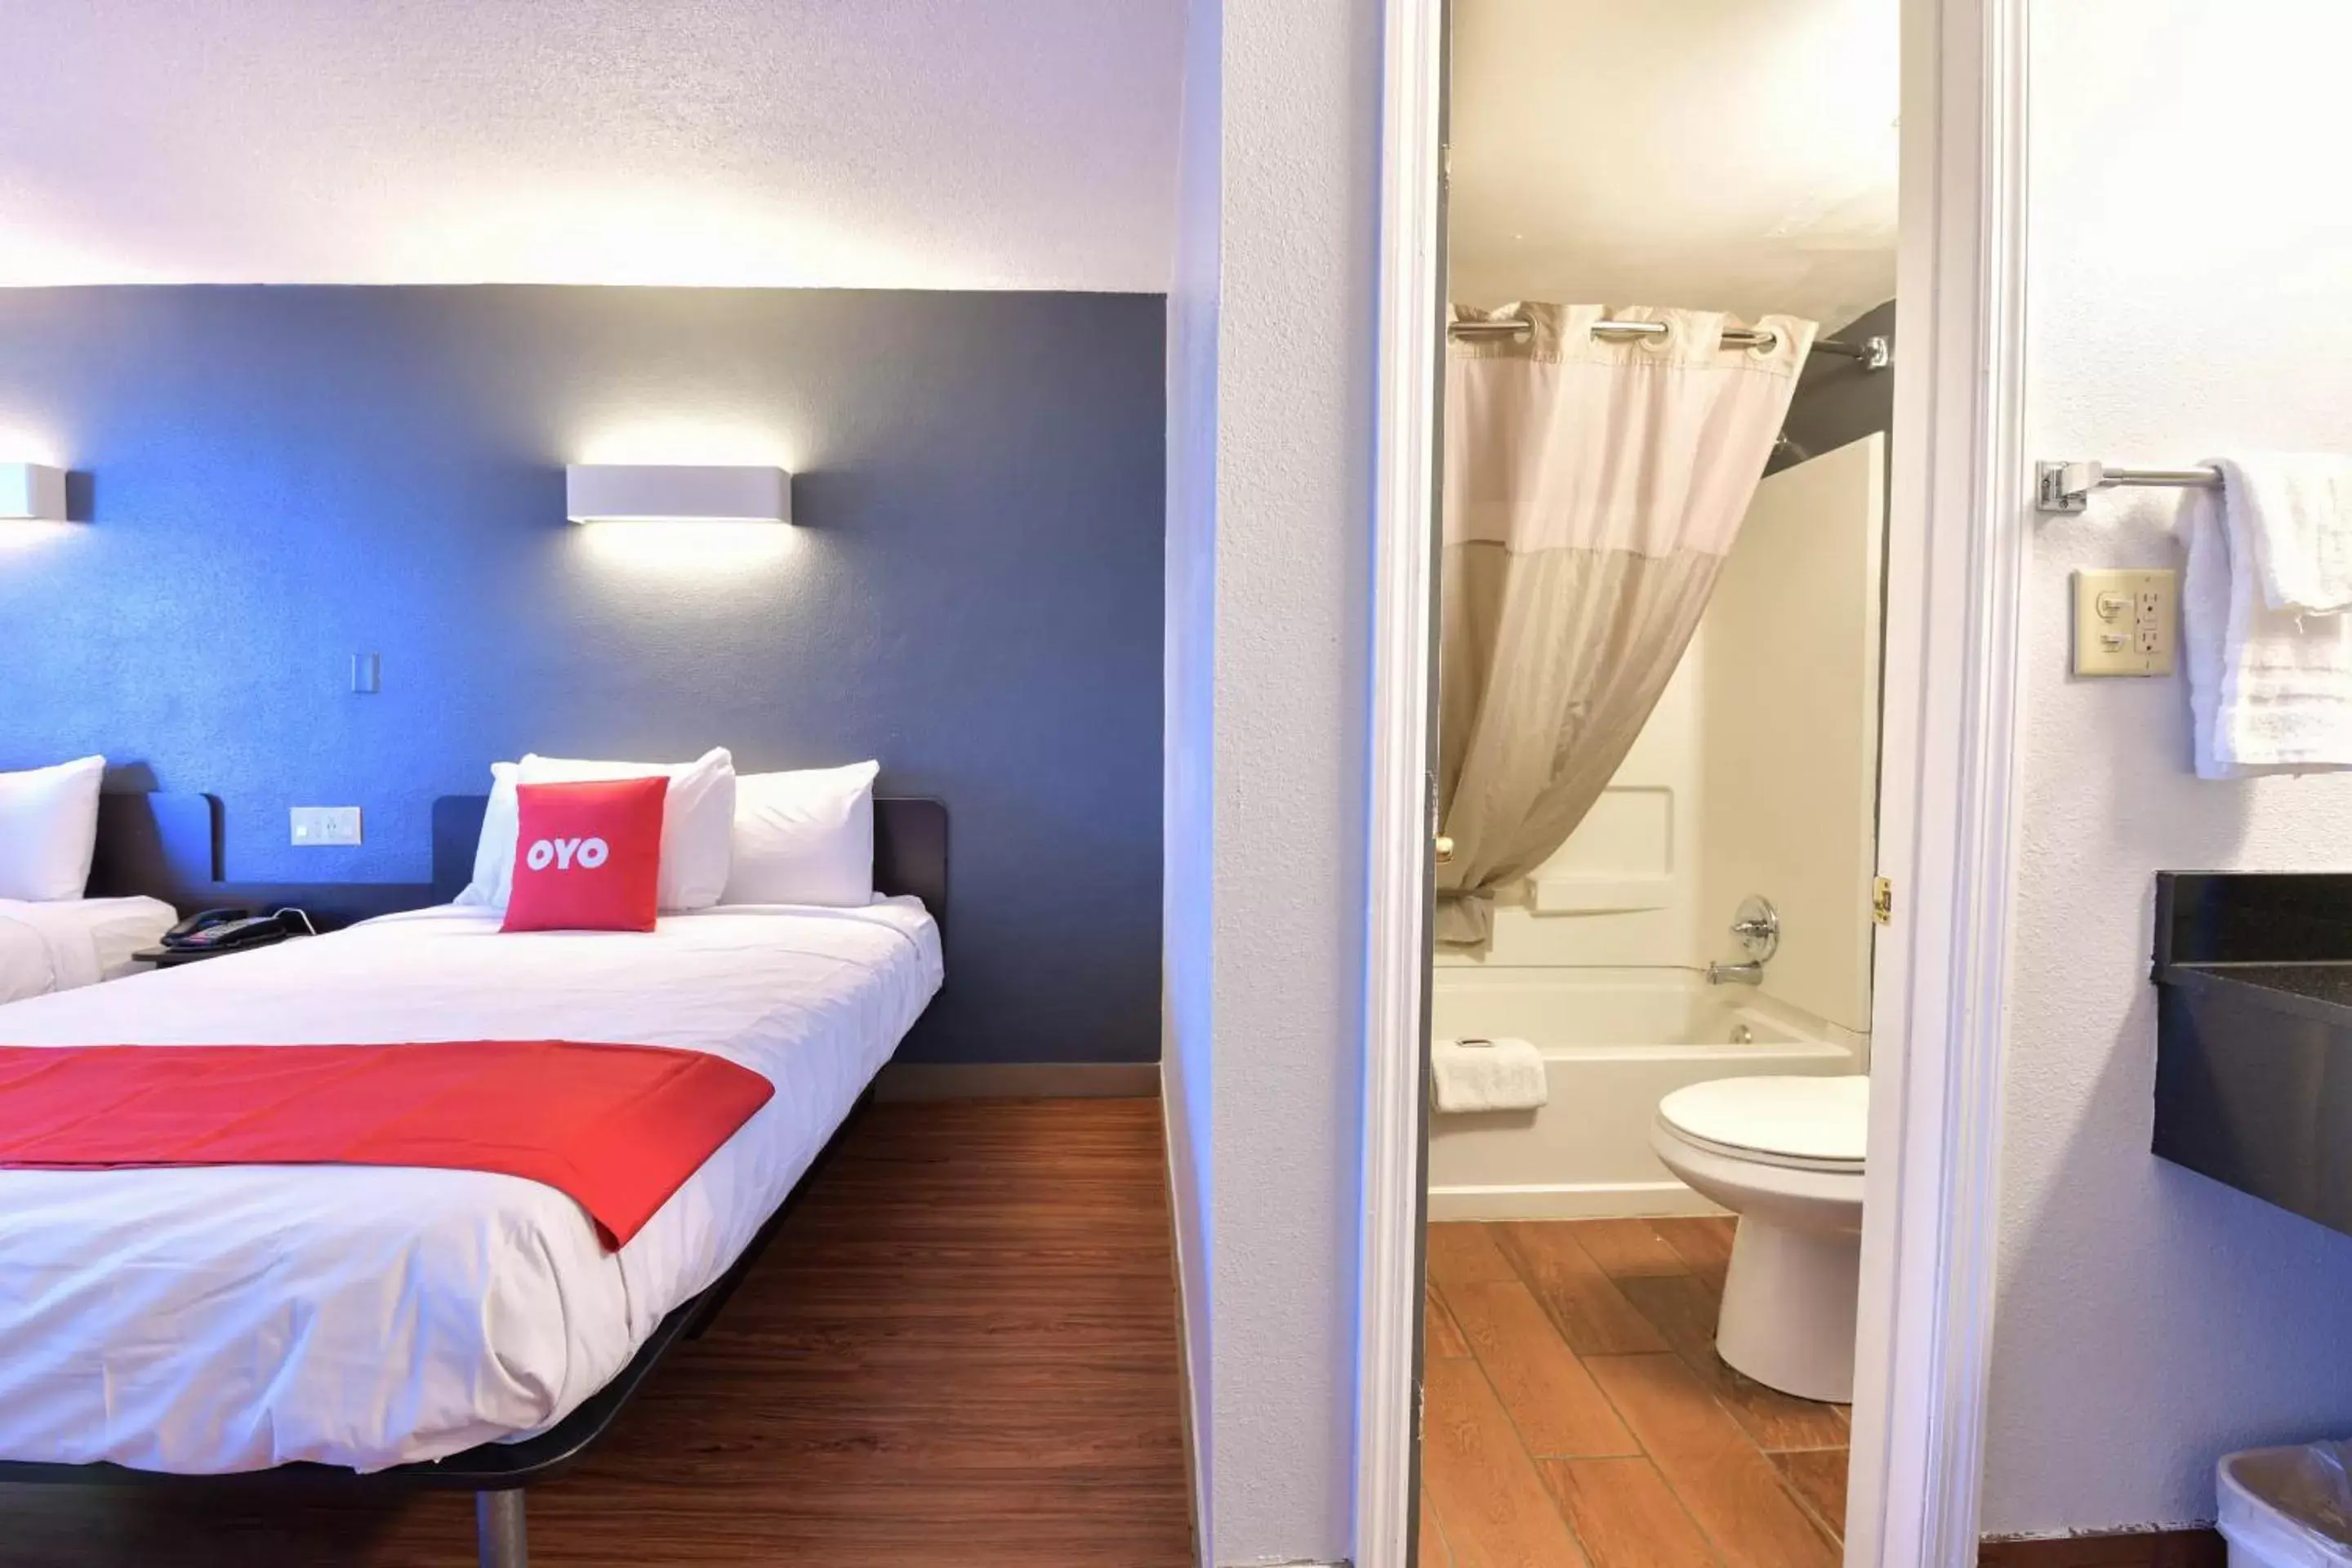 Bedroom, Bathroom in OYO Hotel Valdosta GA I-75